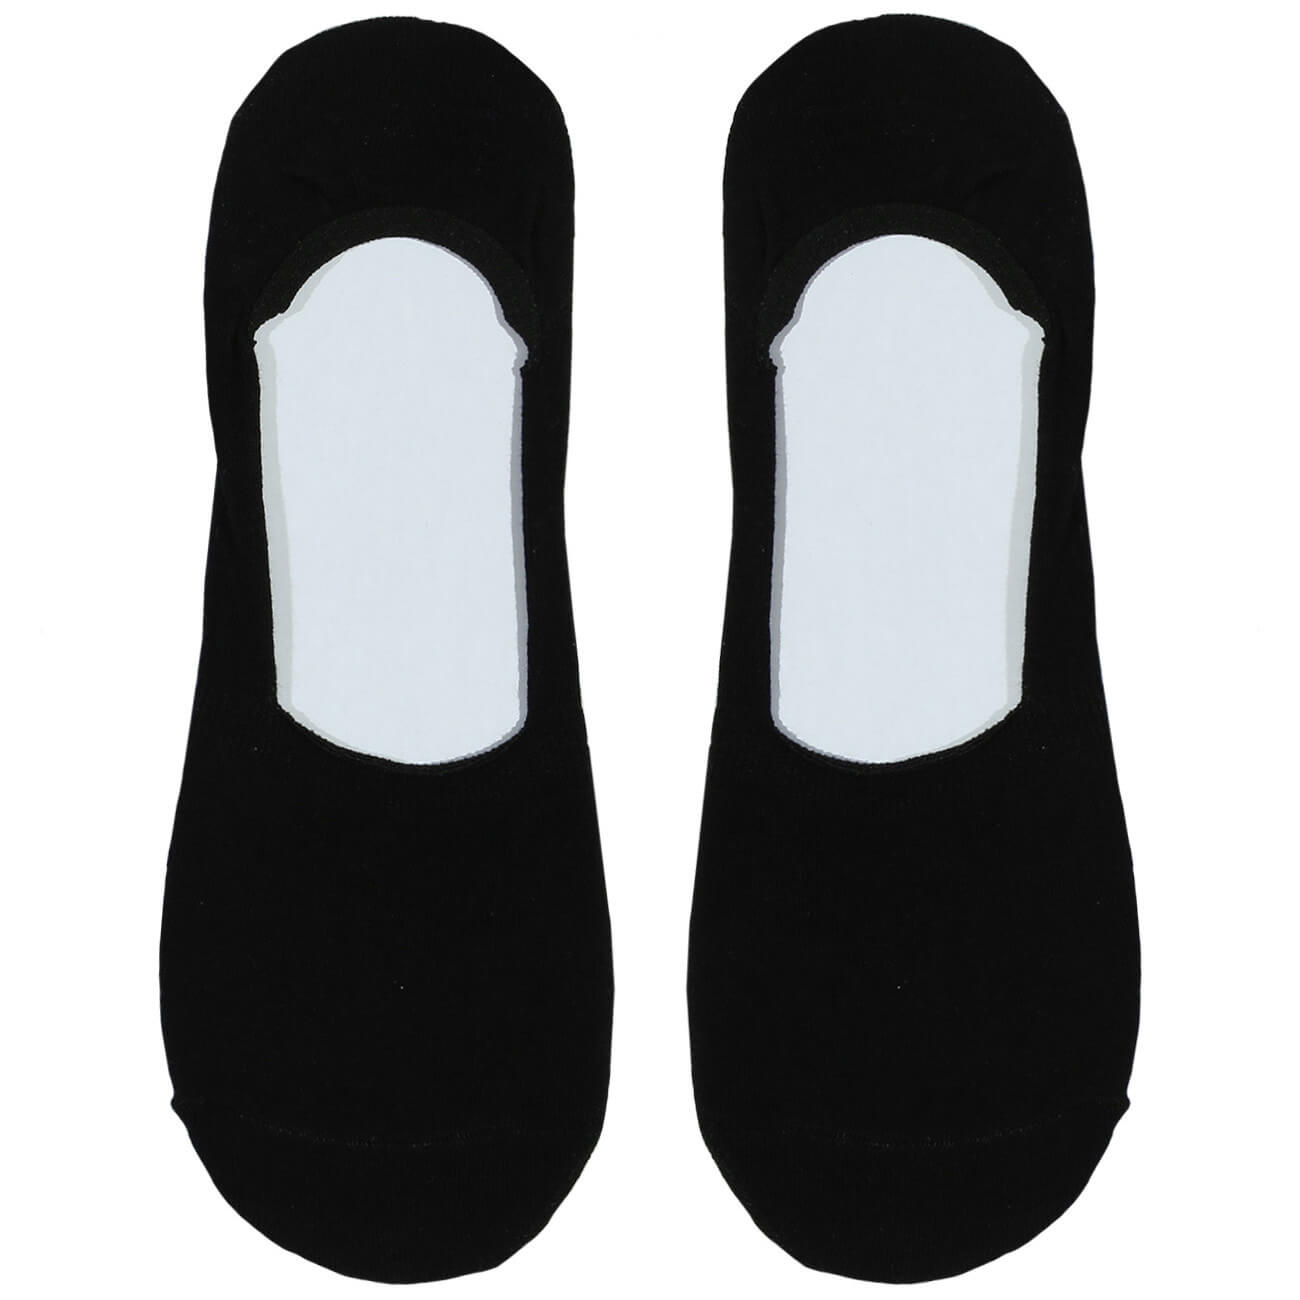 Носки-следки мужские, р. 39-42, хлопок/полиэстер, черные, Basic носки мужские р 43 46 хлопок полиэстер черные basic